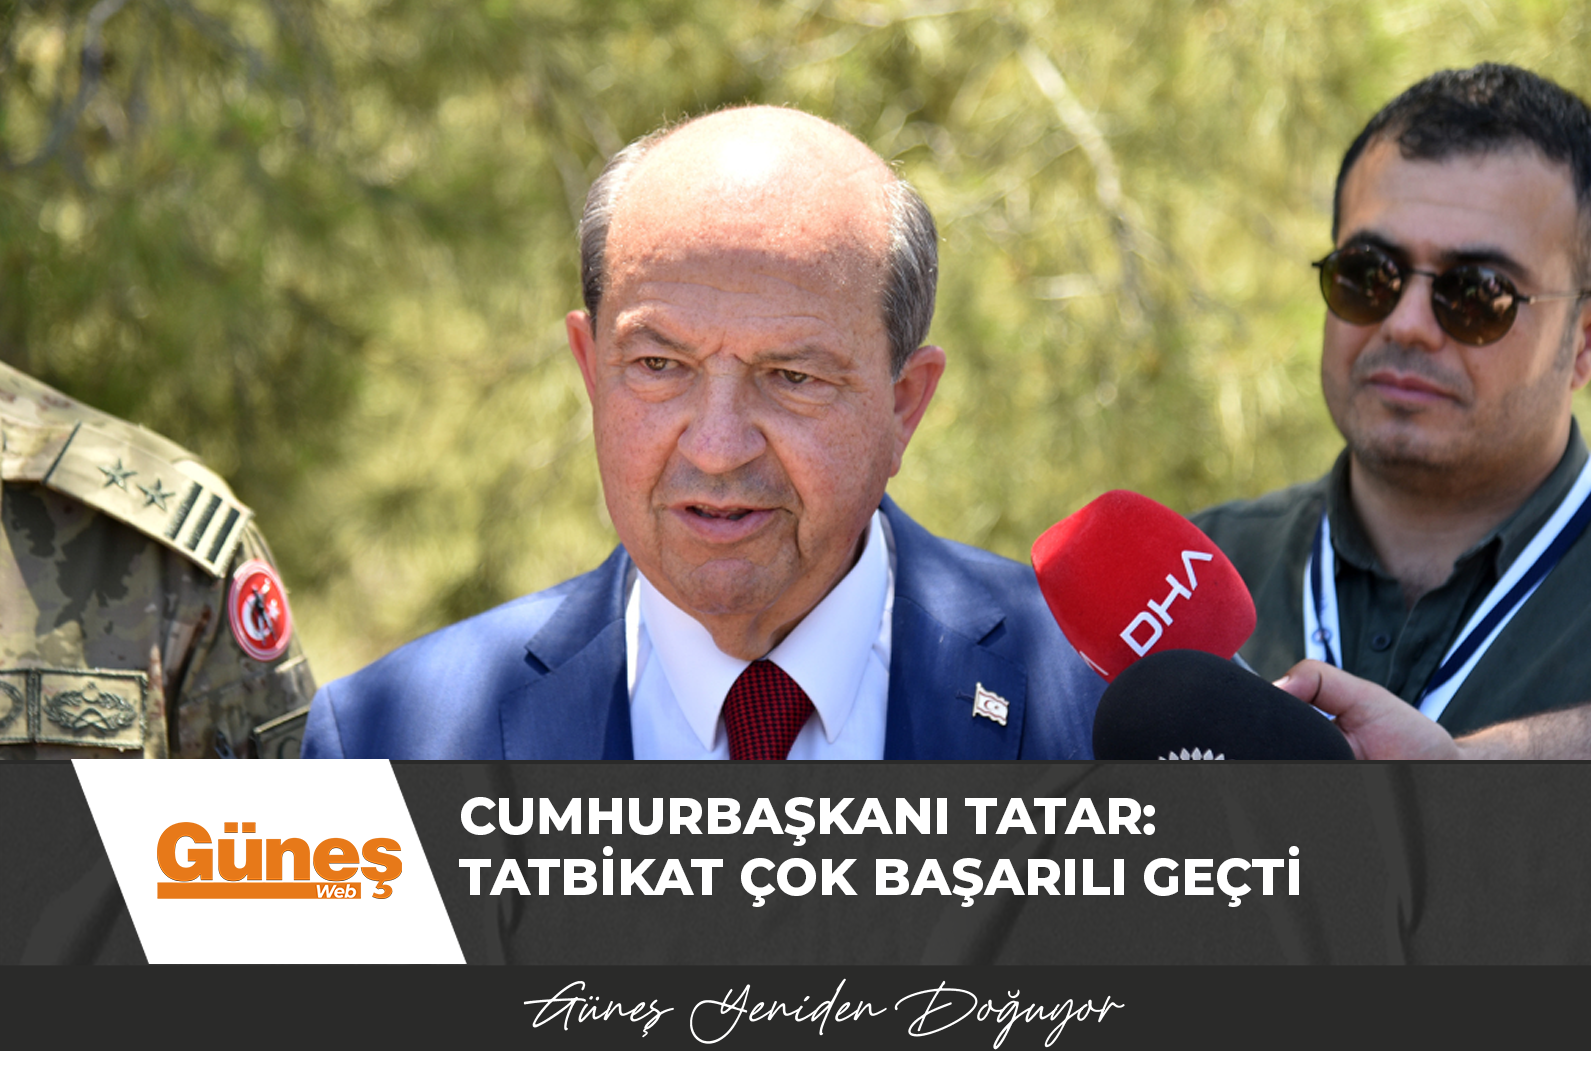 Cumhurbaşkanı Tatar: Tatbikat çok başarılı geçti